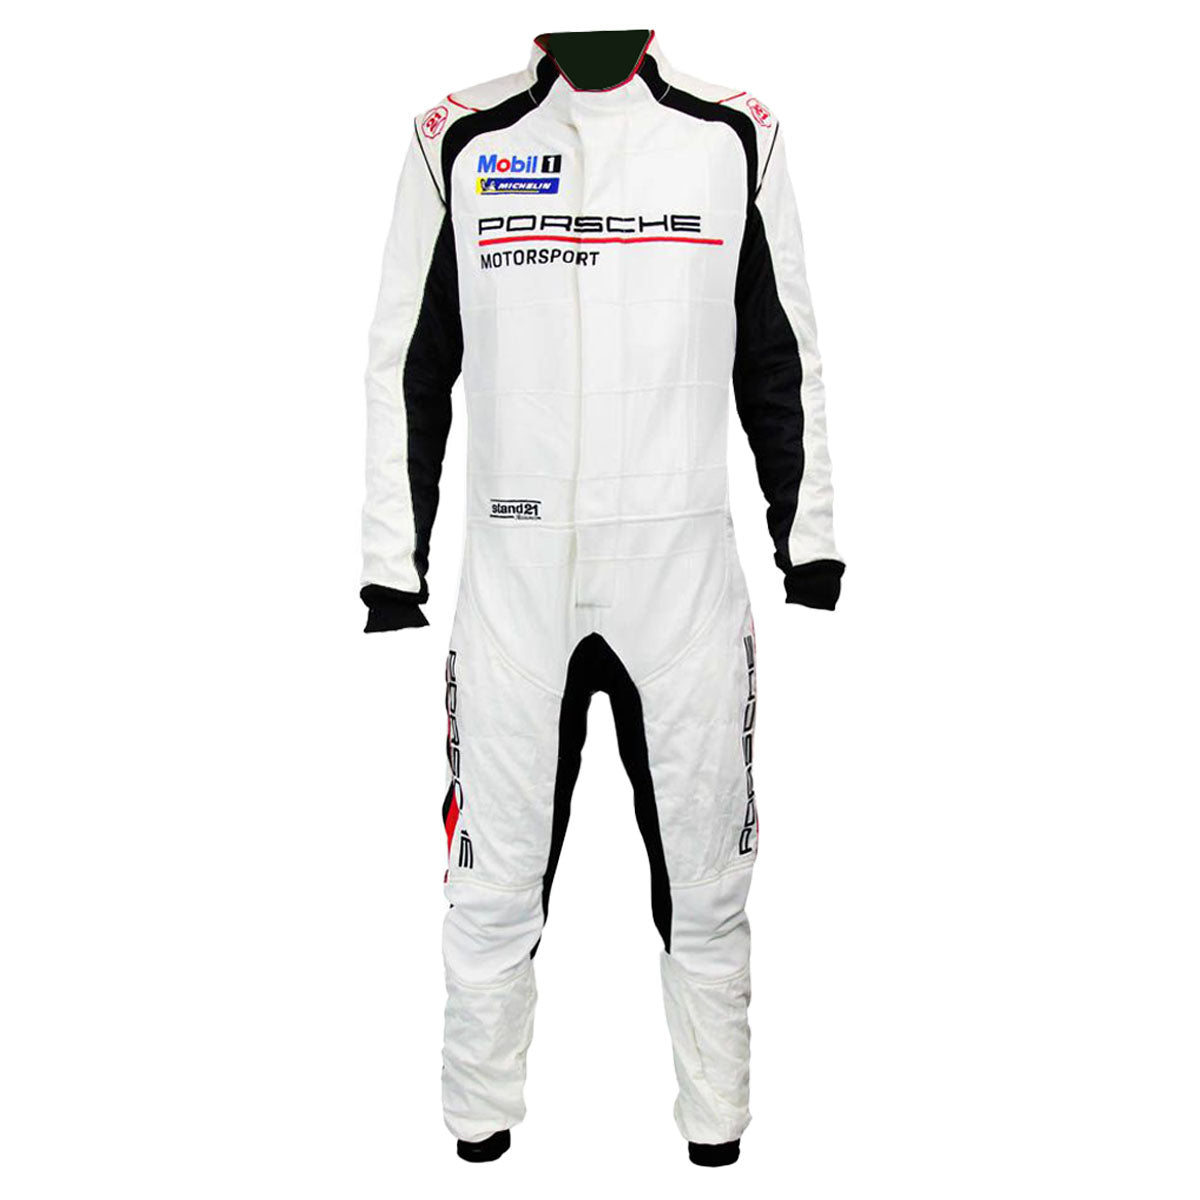 Stand21 Porsche Motorsport La Couture Hybrid Race Suit Front Image